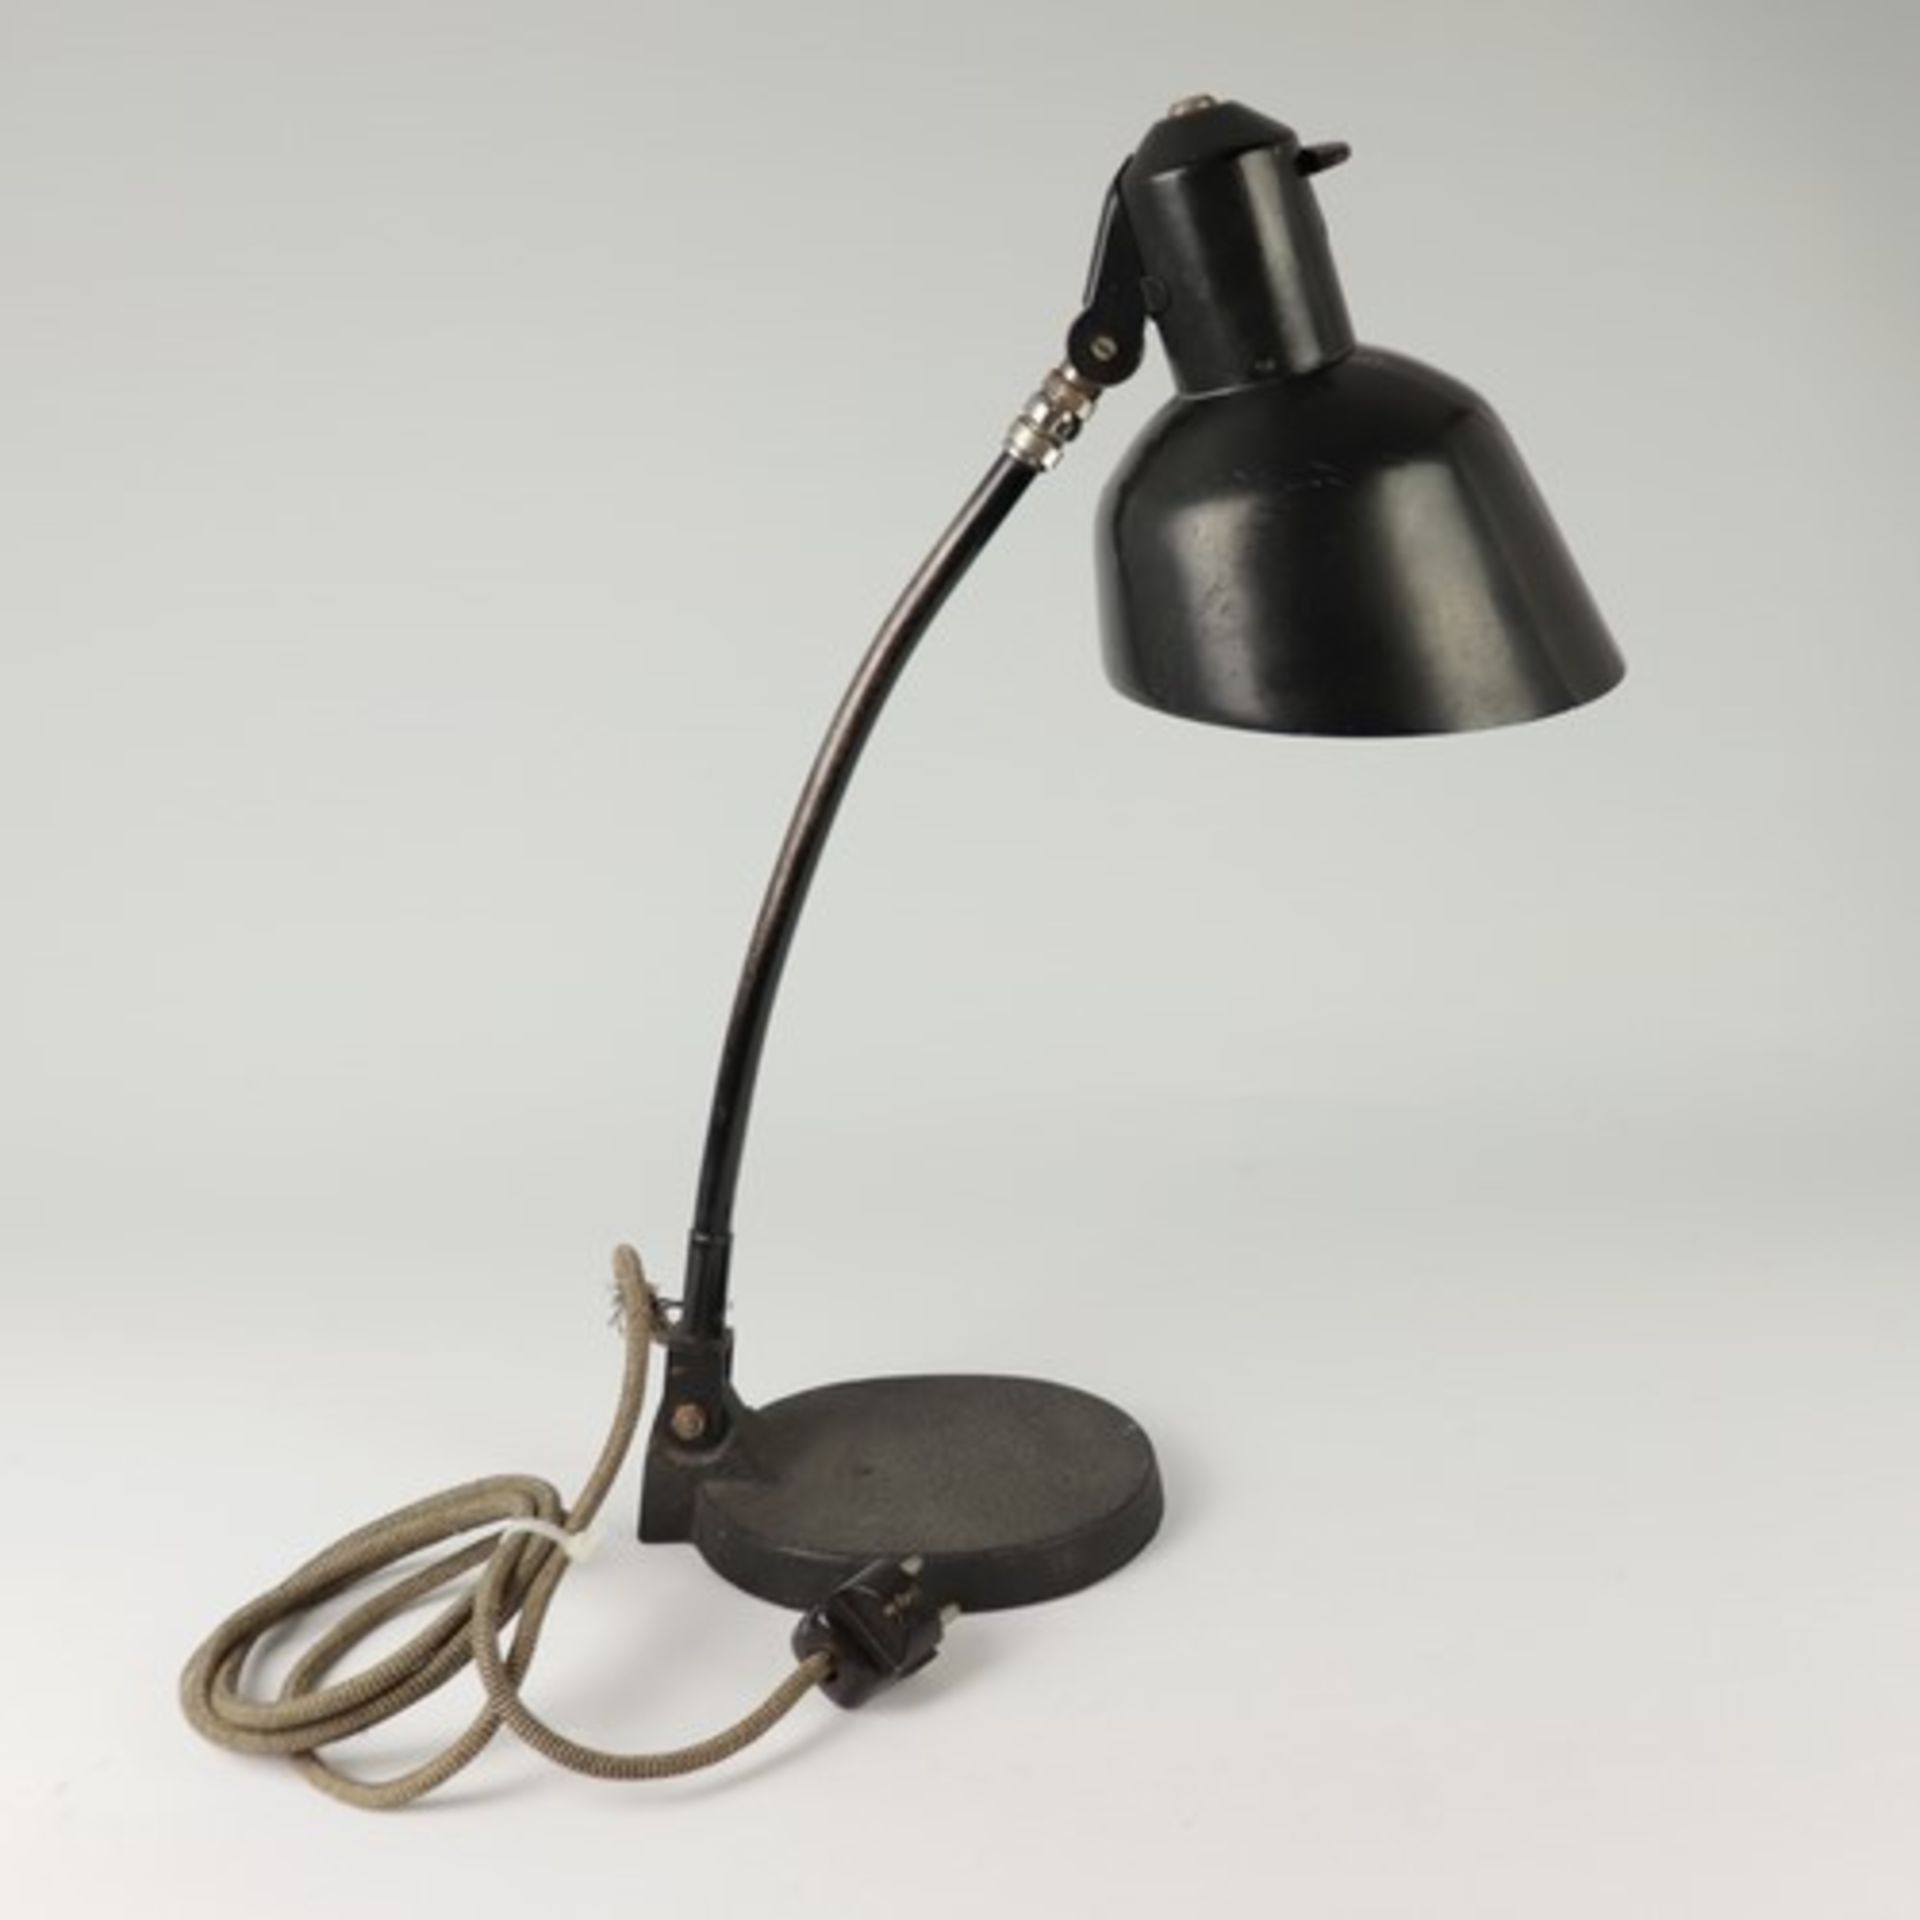 Tischlampe - Art-décoim Schirm bez., Prägemarke SIS, um 1920, Werkstattlampe/Gelenklampe - Bild 3 aus 6